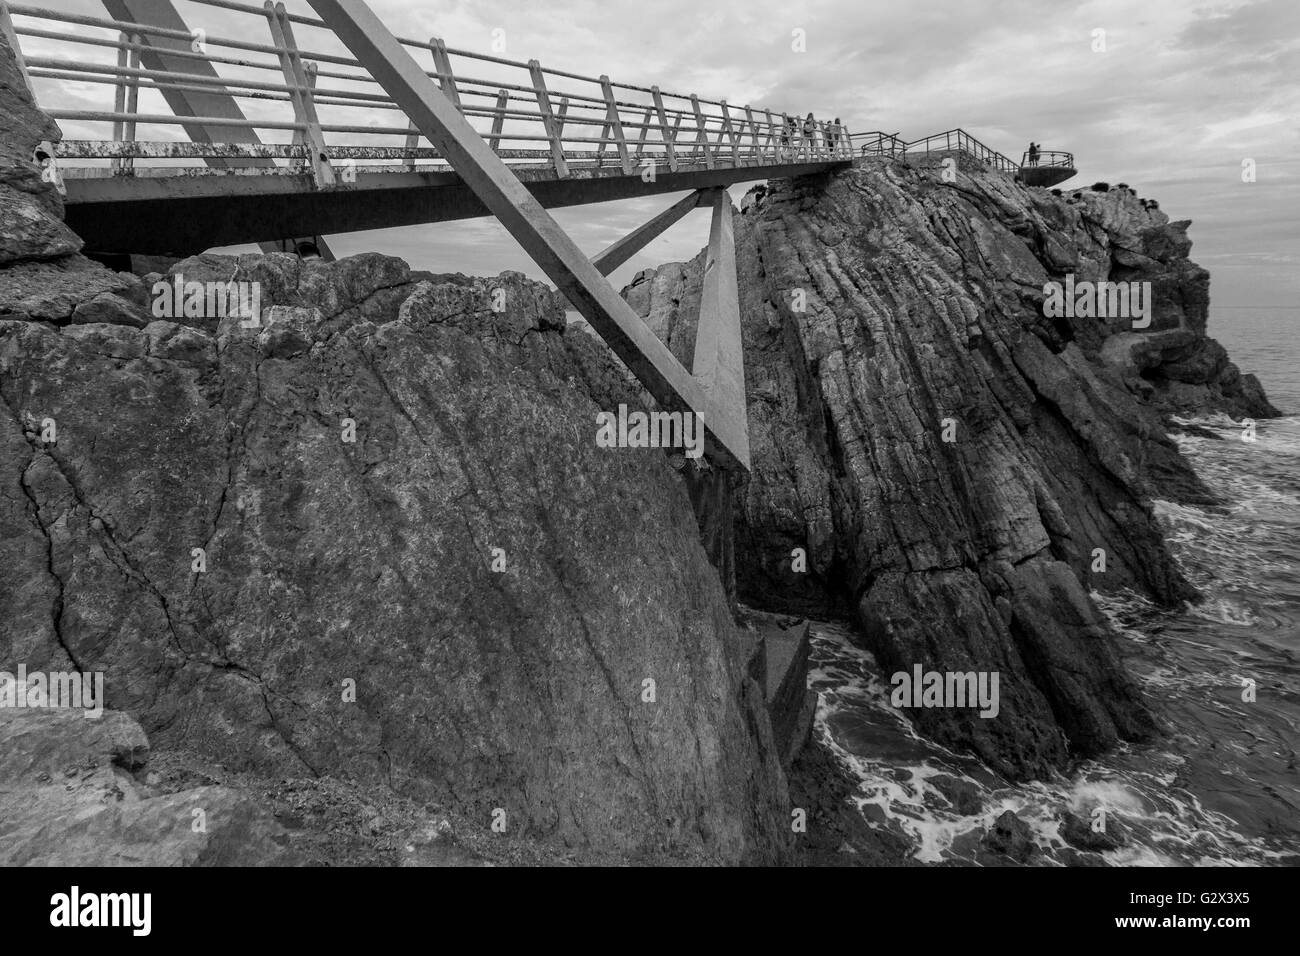 Eisenbrücke mit Holzböden und Rost am Meer, in Avilés, Spanien Stockfoto